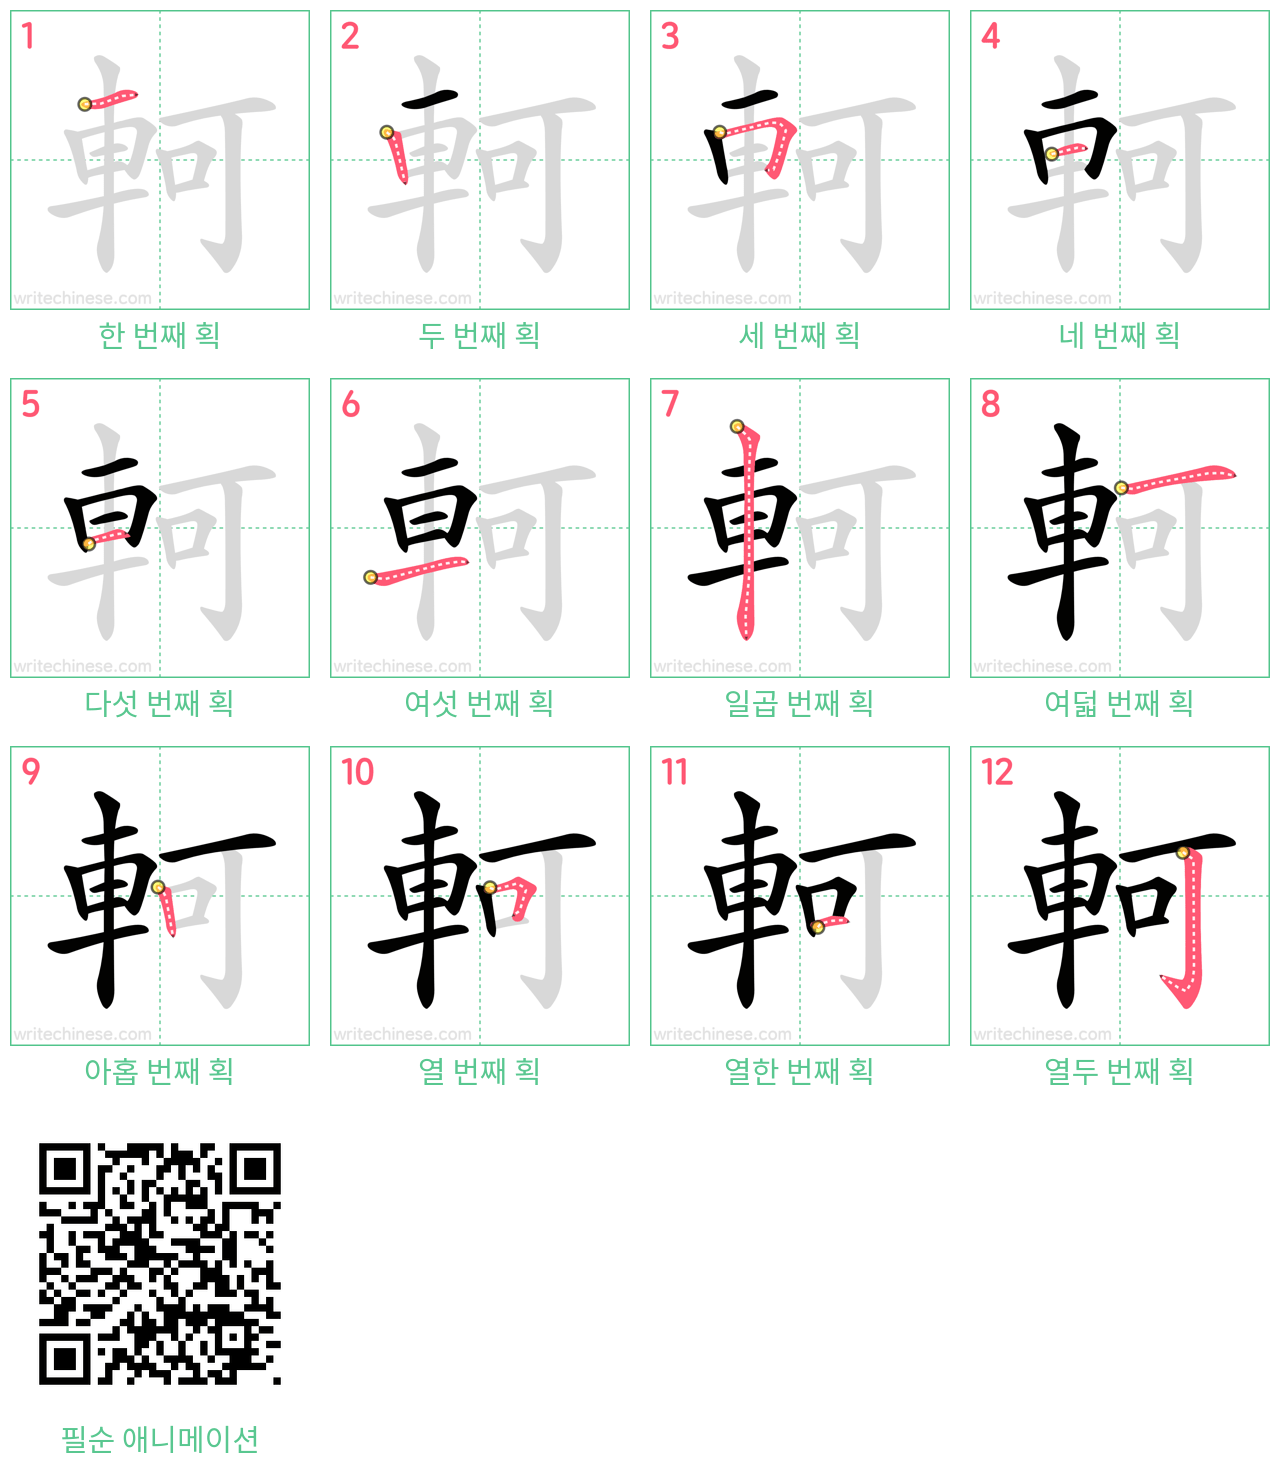 軻 step-by-step stroke order diagrams